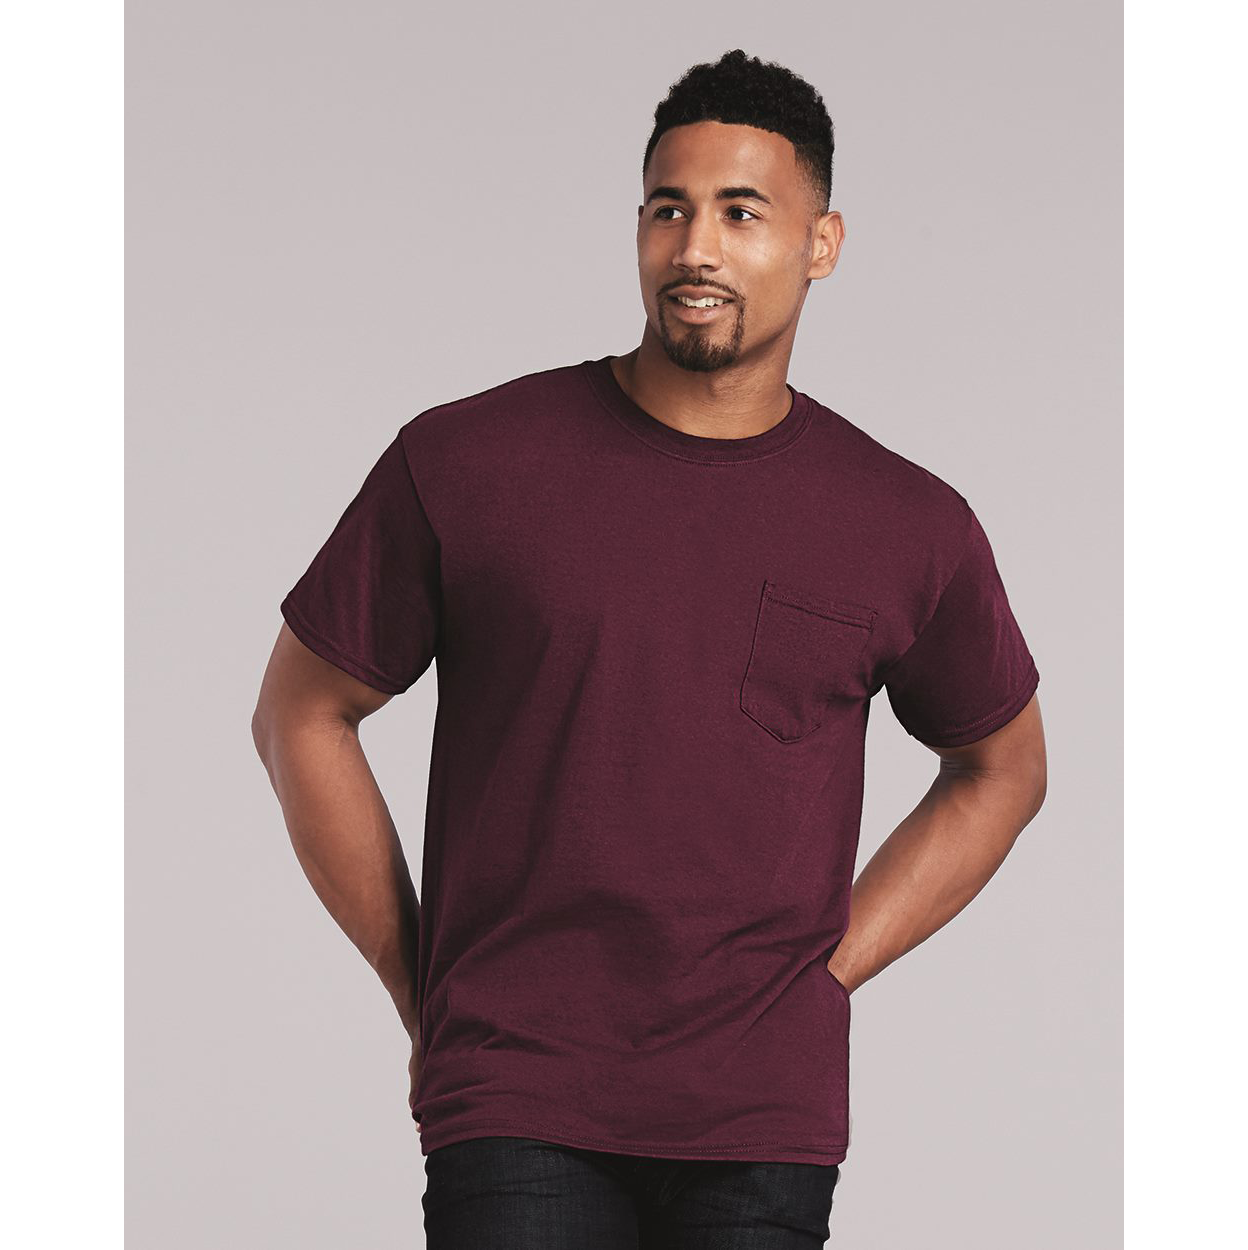 Loparex Gildan Ultra Cotton T-Shirt with a Pocket